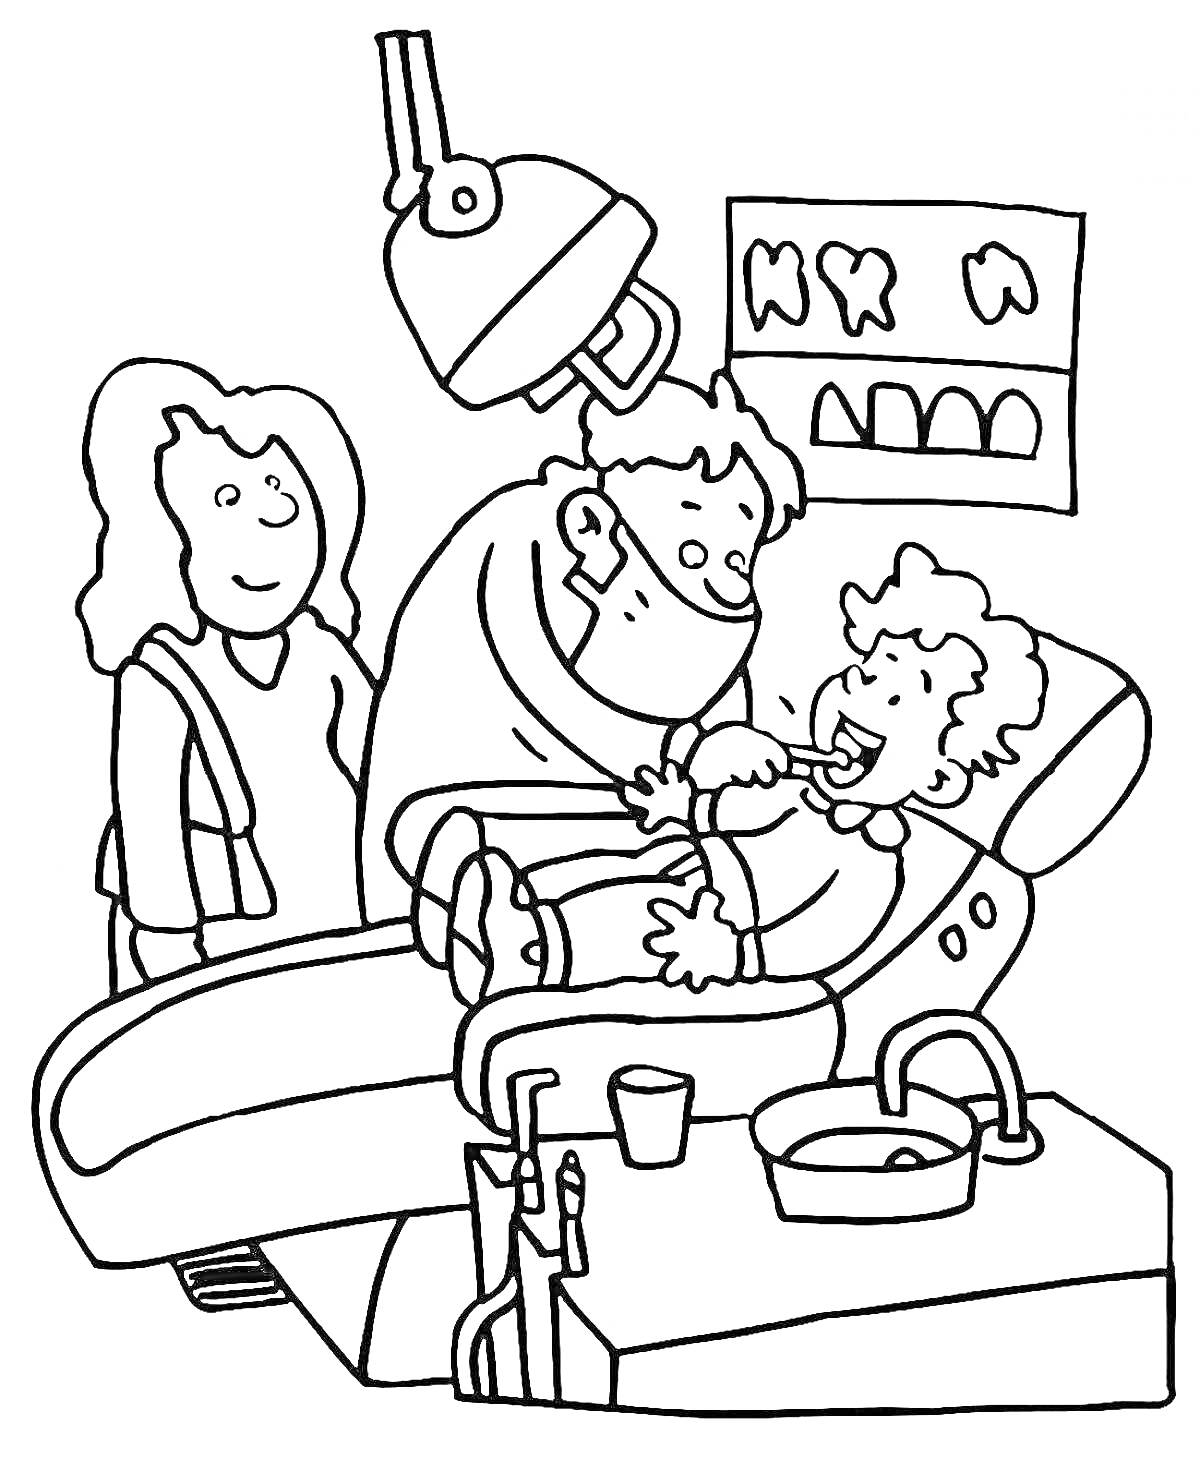 Визит к стоматологу – ребенок на стоматологическом кресле, стоматолог осматривает зубы с использованием инструментов, ассистент смотрит, на стене висят изображения зубов